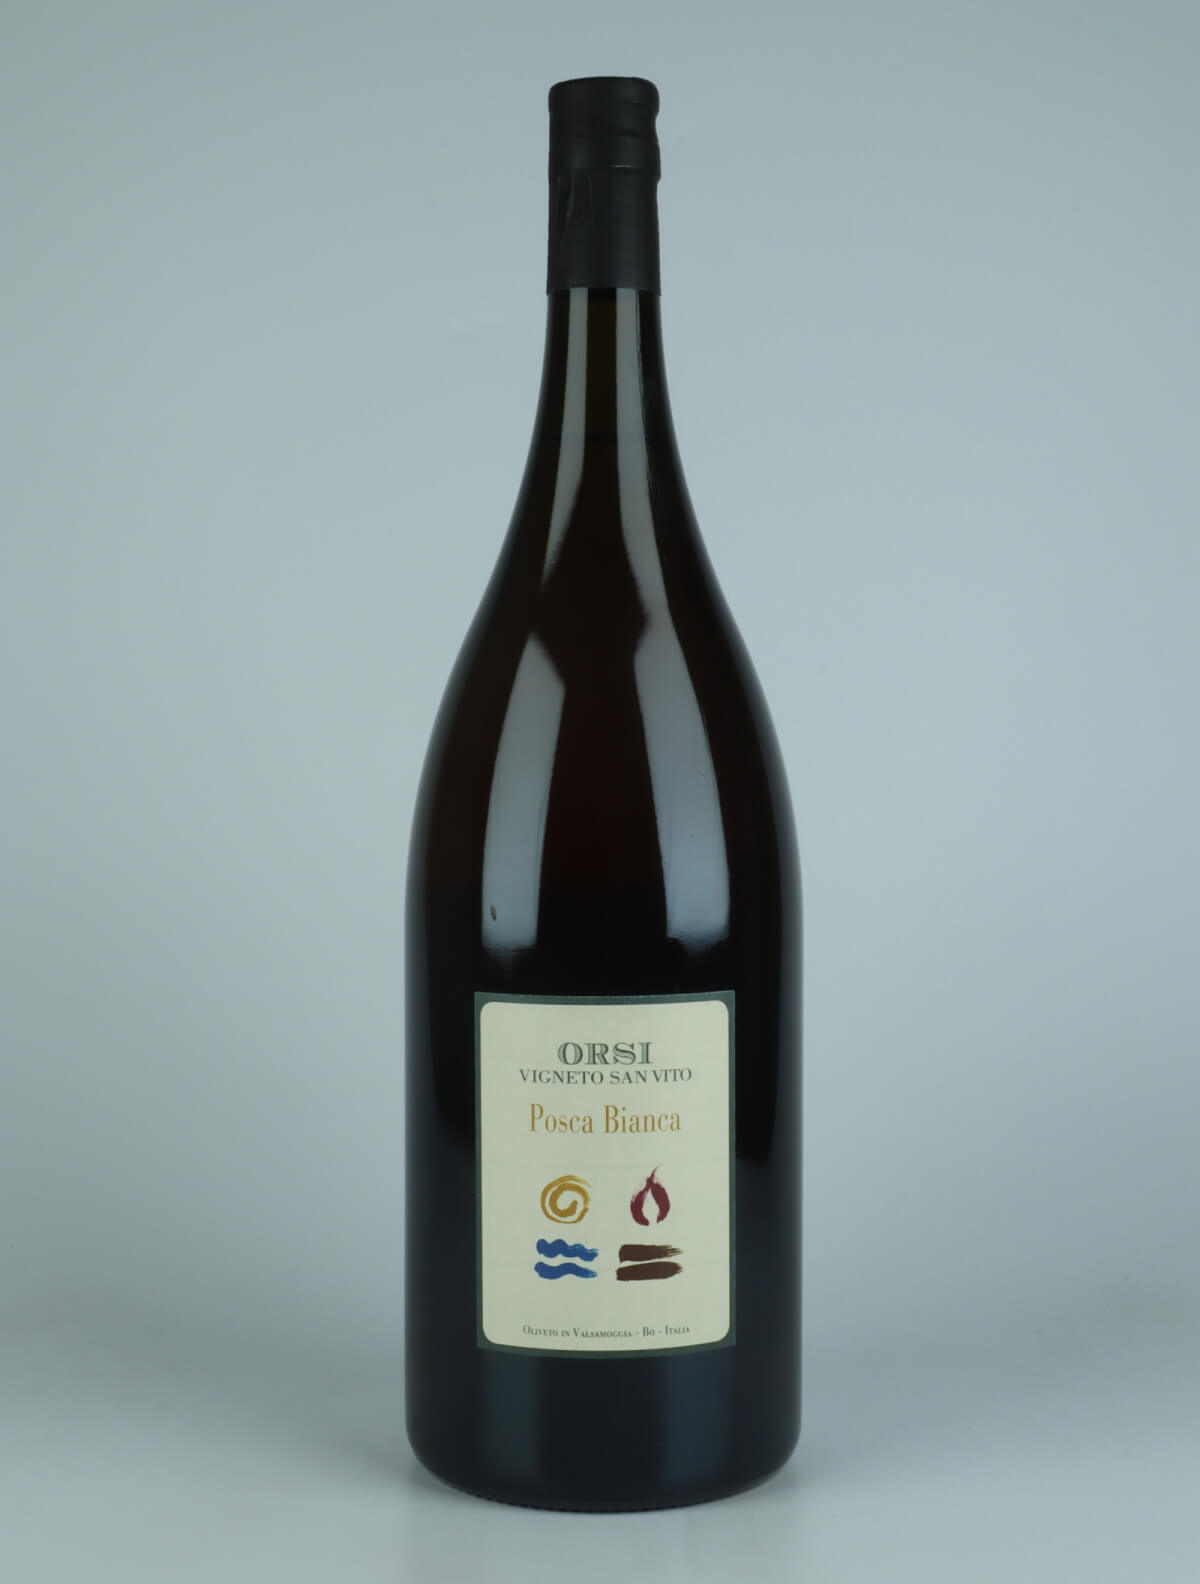 En flaske N.V. Posca Bianca - Magnum Hvidvin fra Orsi - San Vito, Emilia-Romagna i Italien